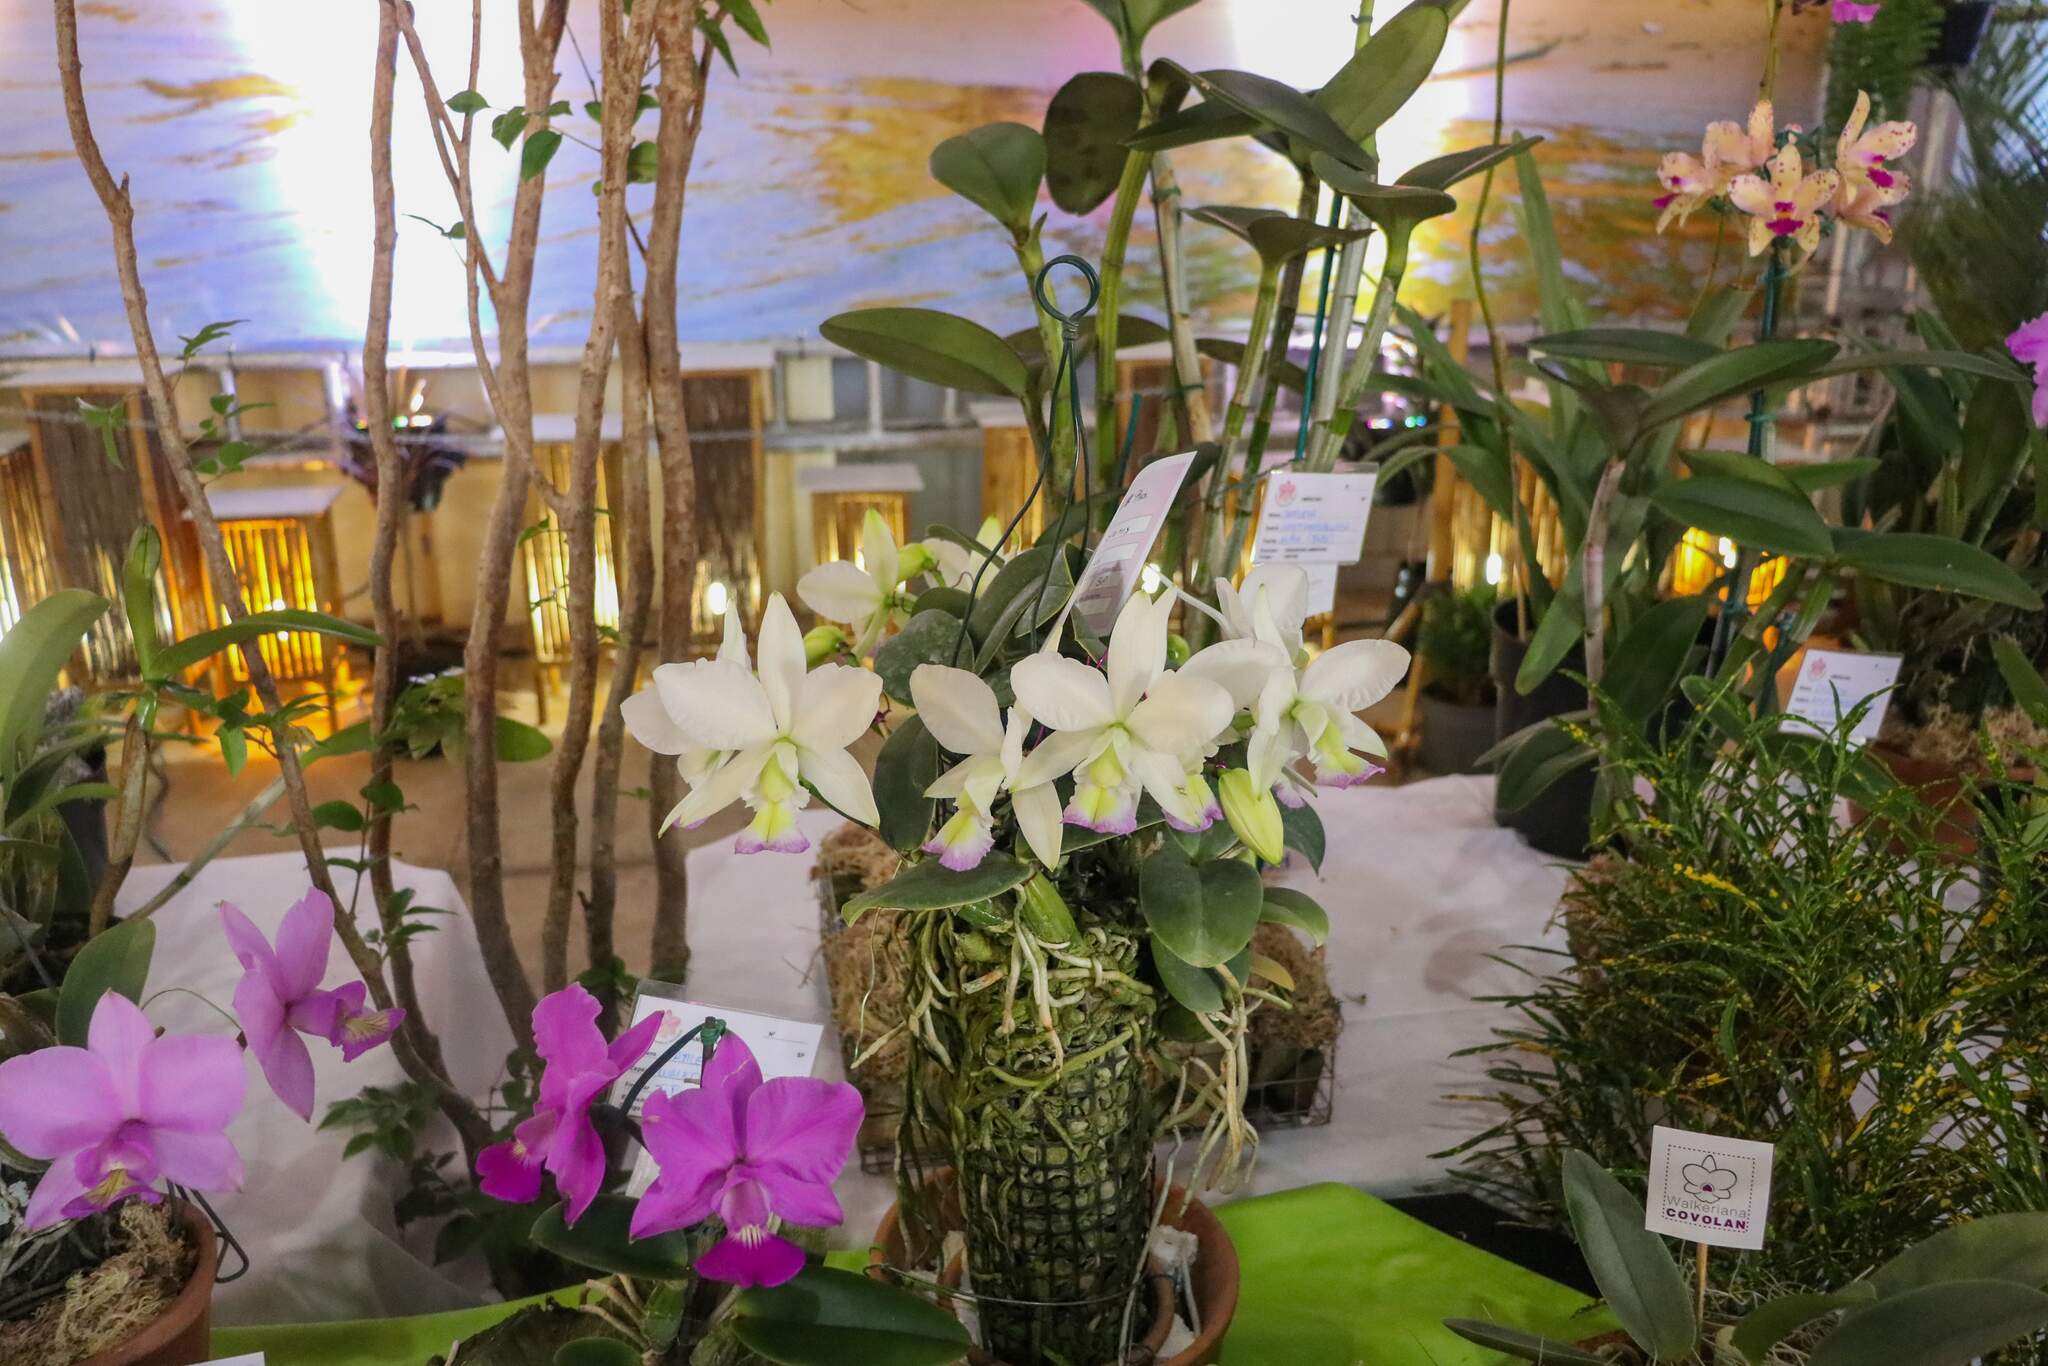 Com plantas de R$ 7 mil, exposição enlouquece quem ama orquídeas - Consumo  - Campo Grande News